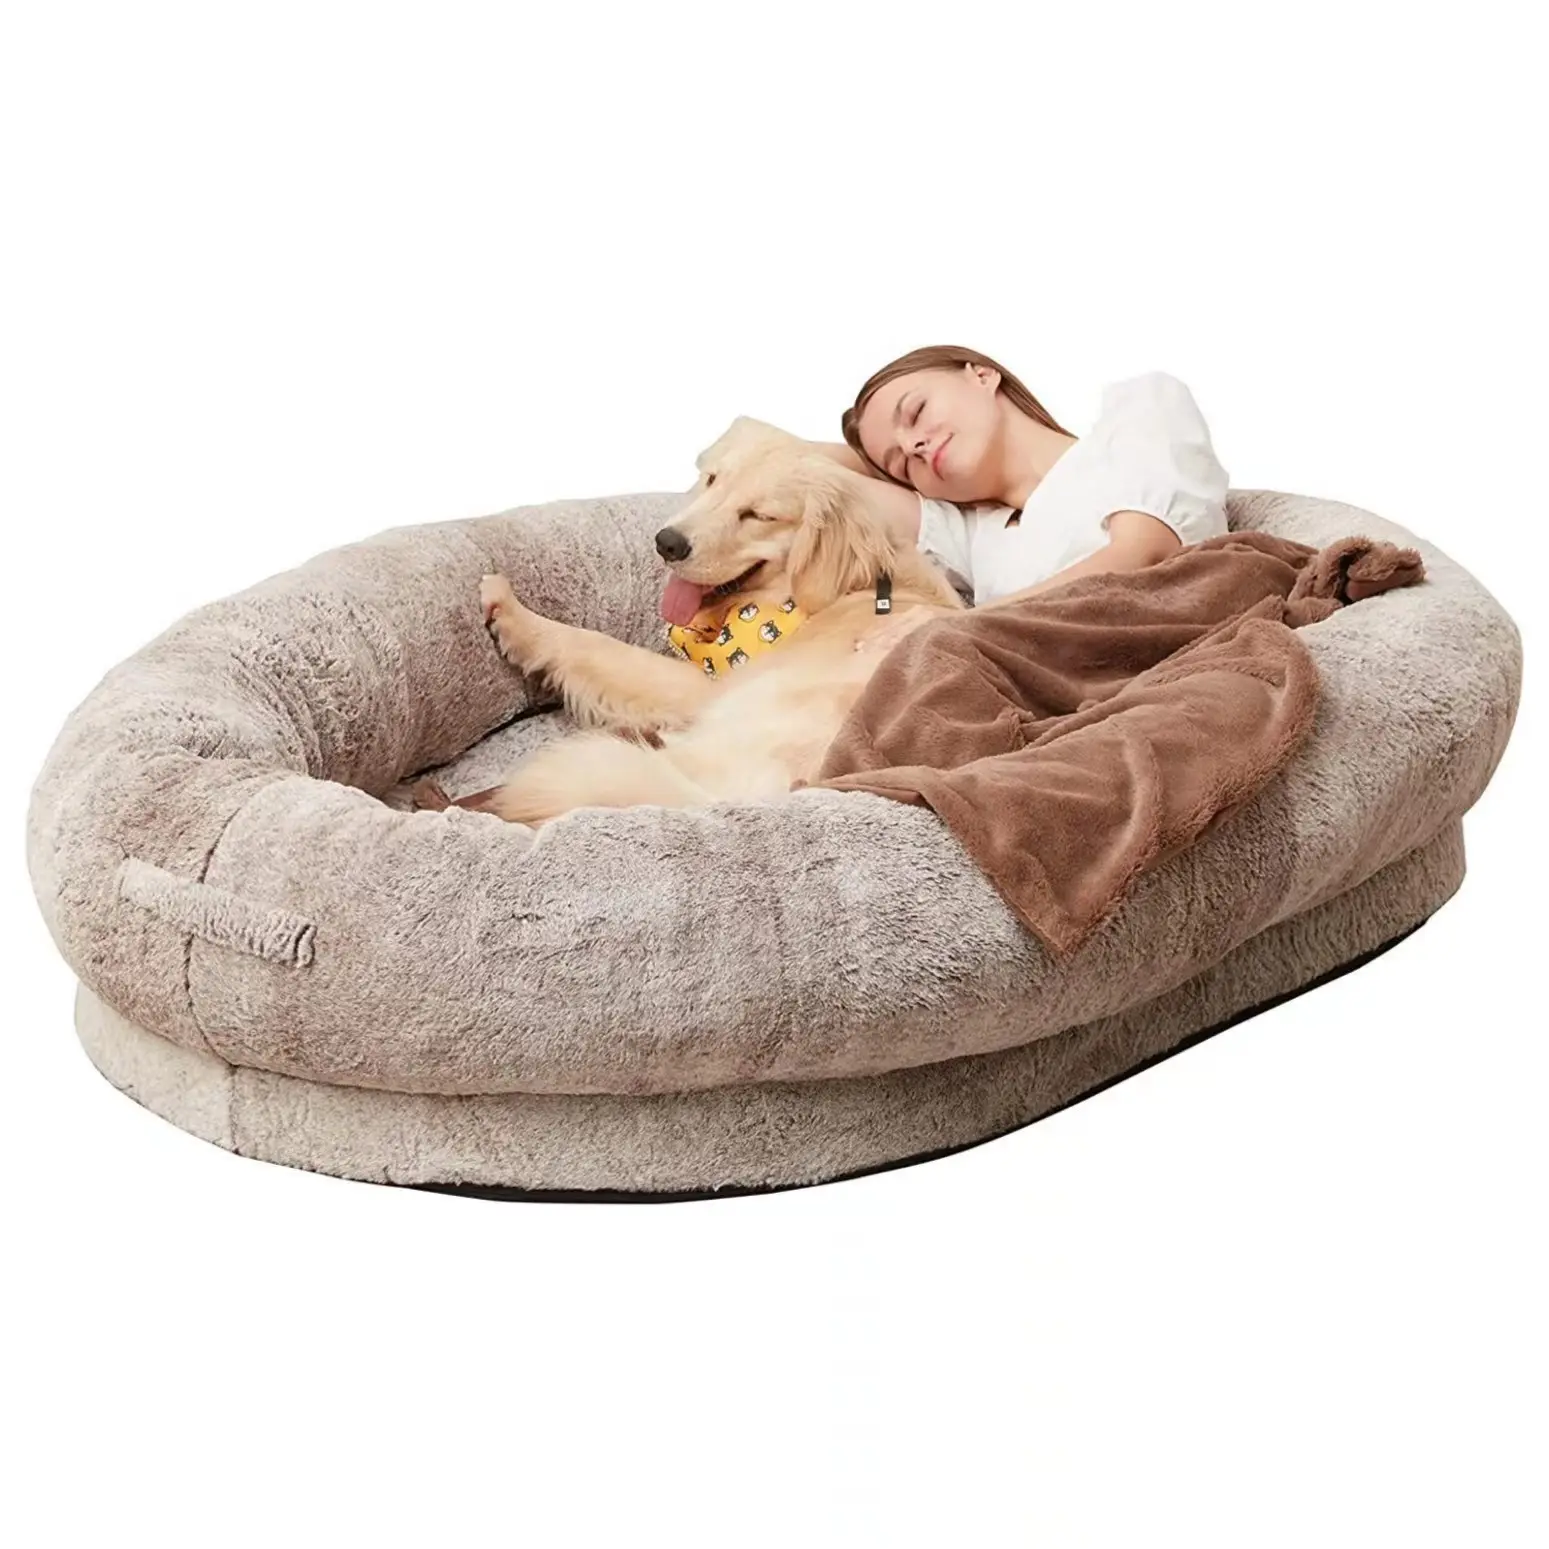 Conception personnalisée, couverture chaude, douce et confortable pour chien de taille humaine, grand lit de luxe en mousse à mémoire de forme pour grand animal de compagnie.